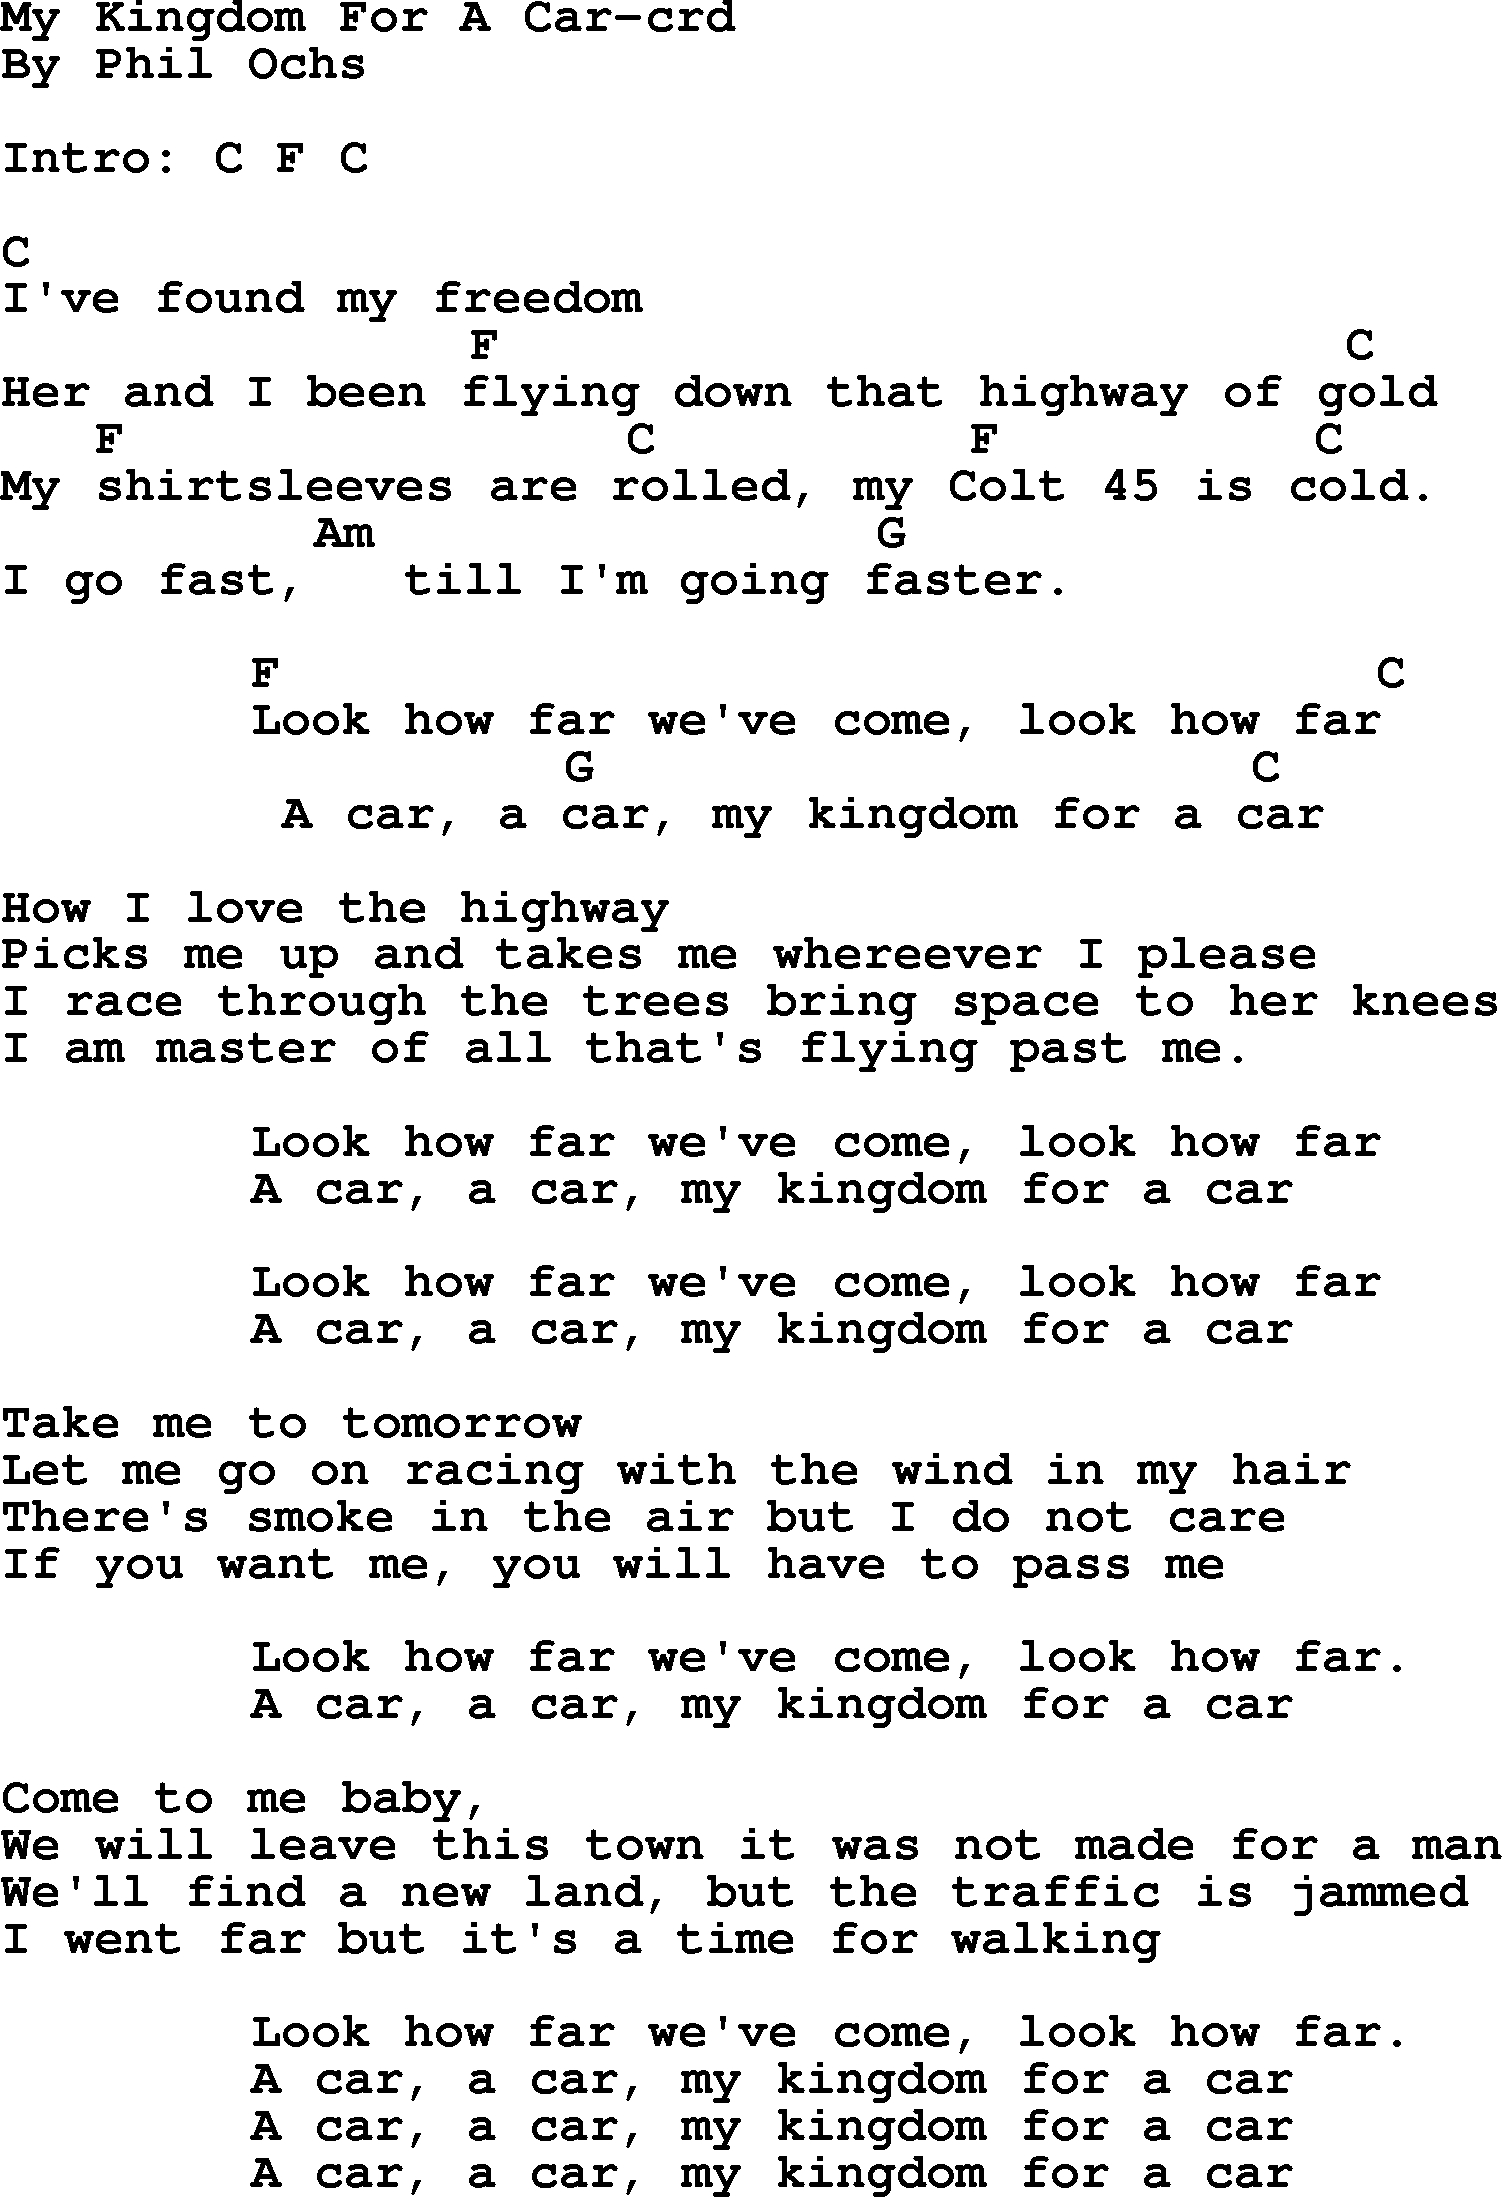 Fast Car Chords Phil Ochs Song My Kingdom For A Car Lyrics And Chords